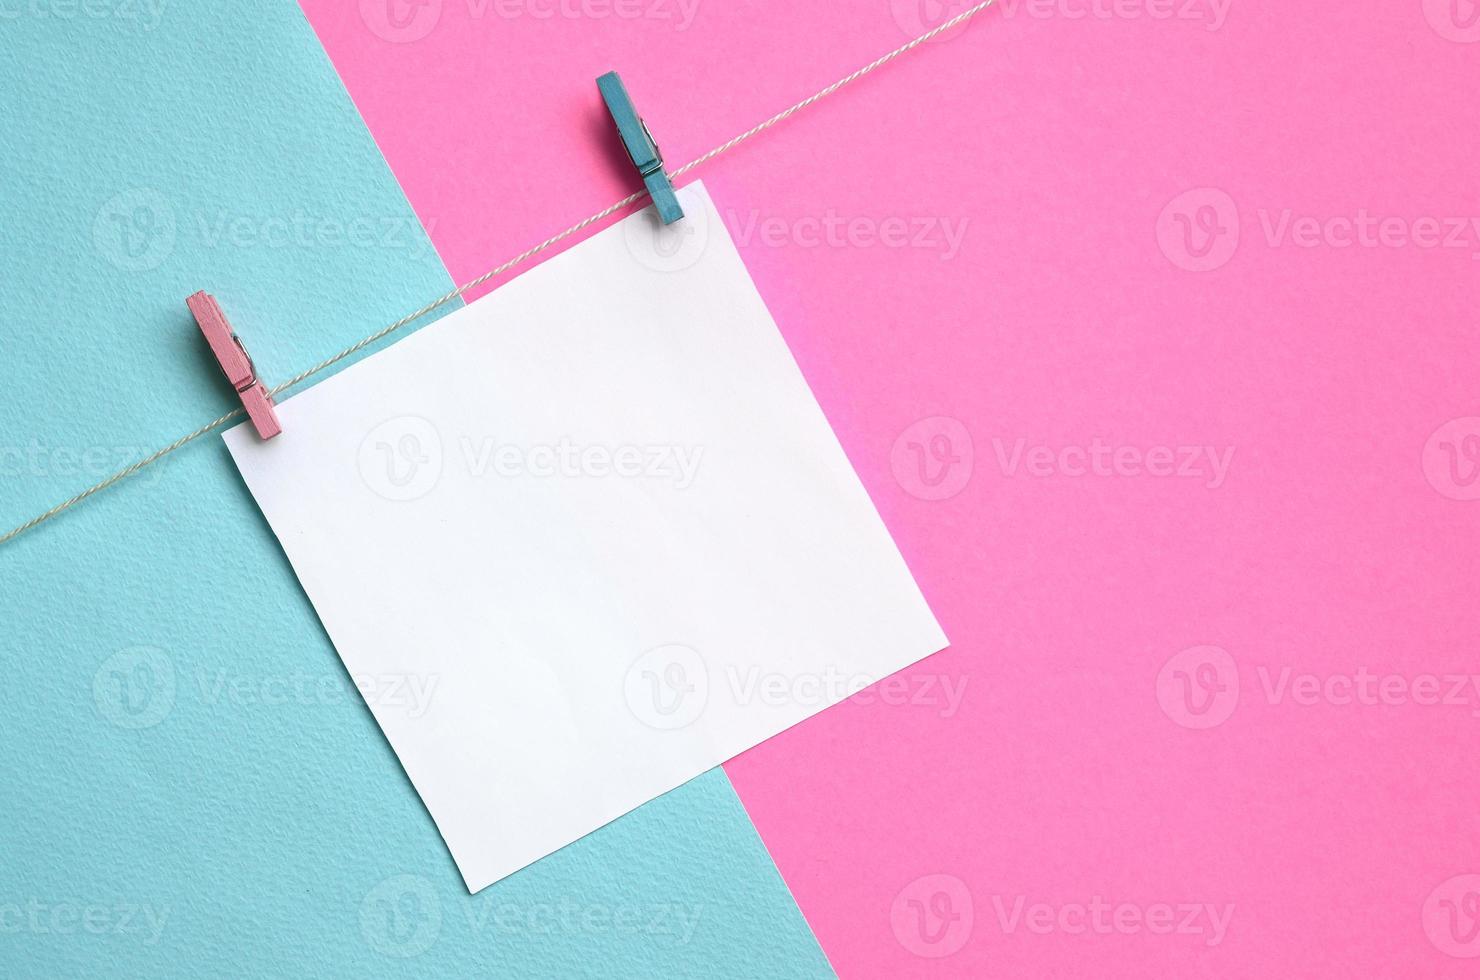 un morceau de papier est suspendu à une corde avec des chevilles sur fond de texture de papier de couleurs pastel bleu et rose de mode dans un concept minimal photo